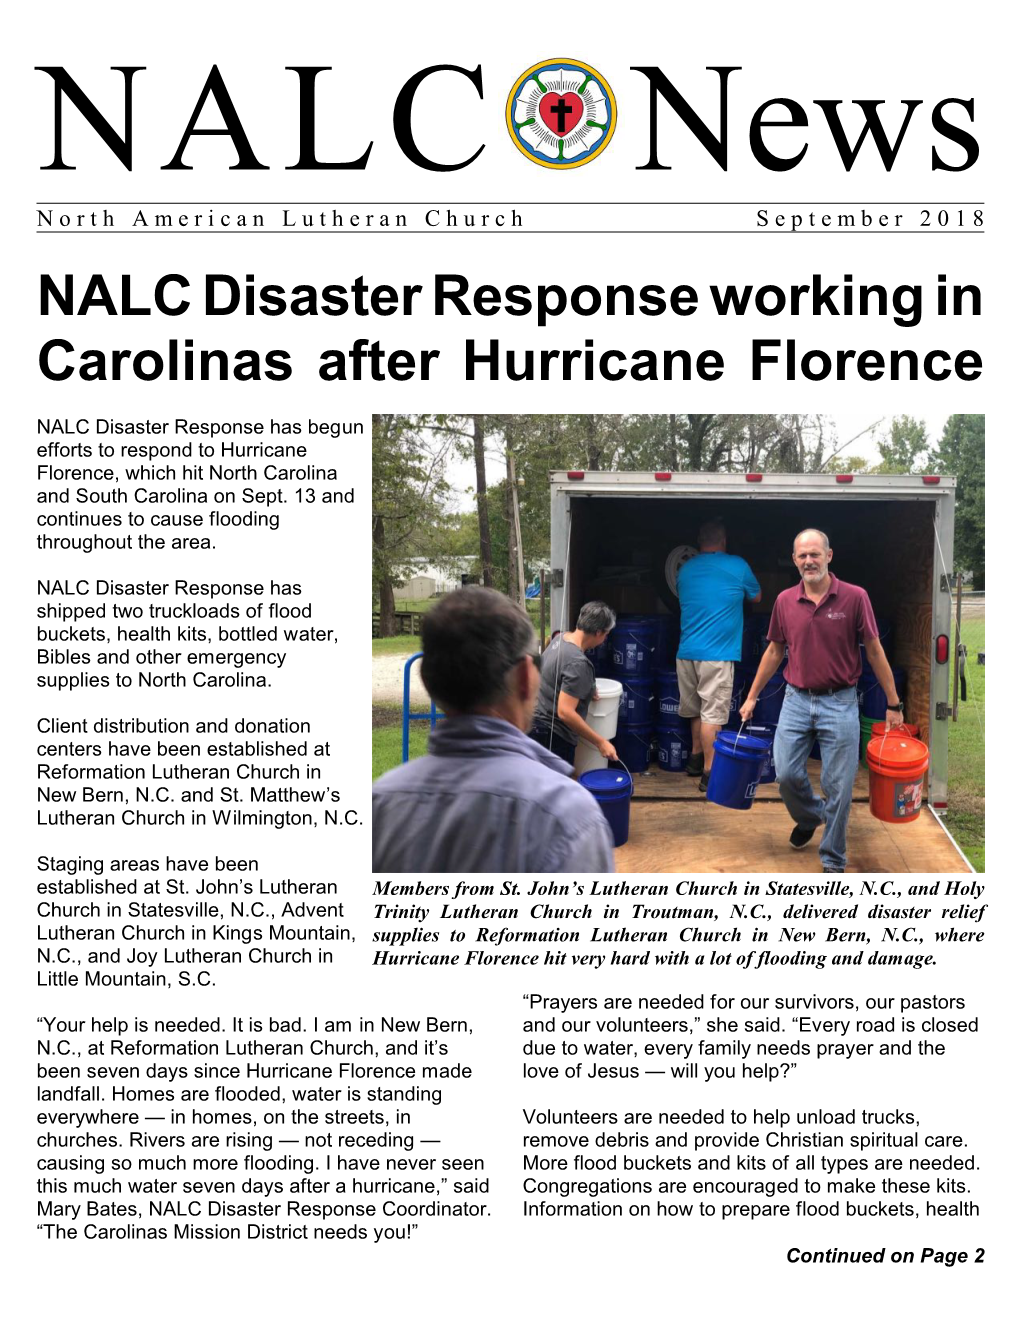 NALC Disaster Response Working in Carolinas After Hurricane Florence